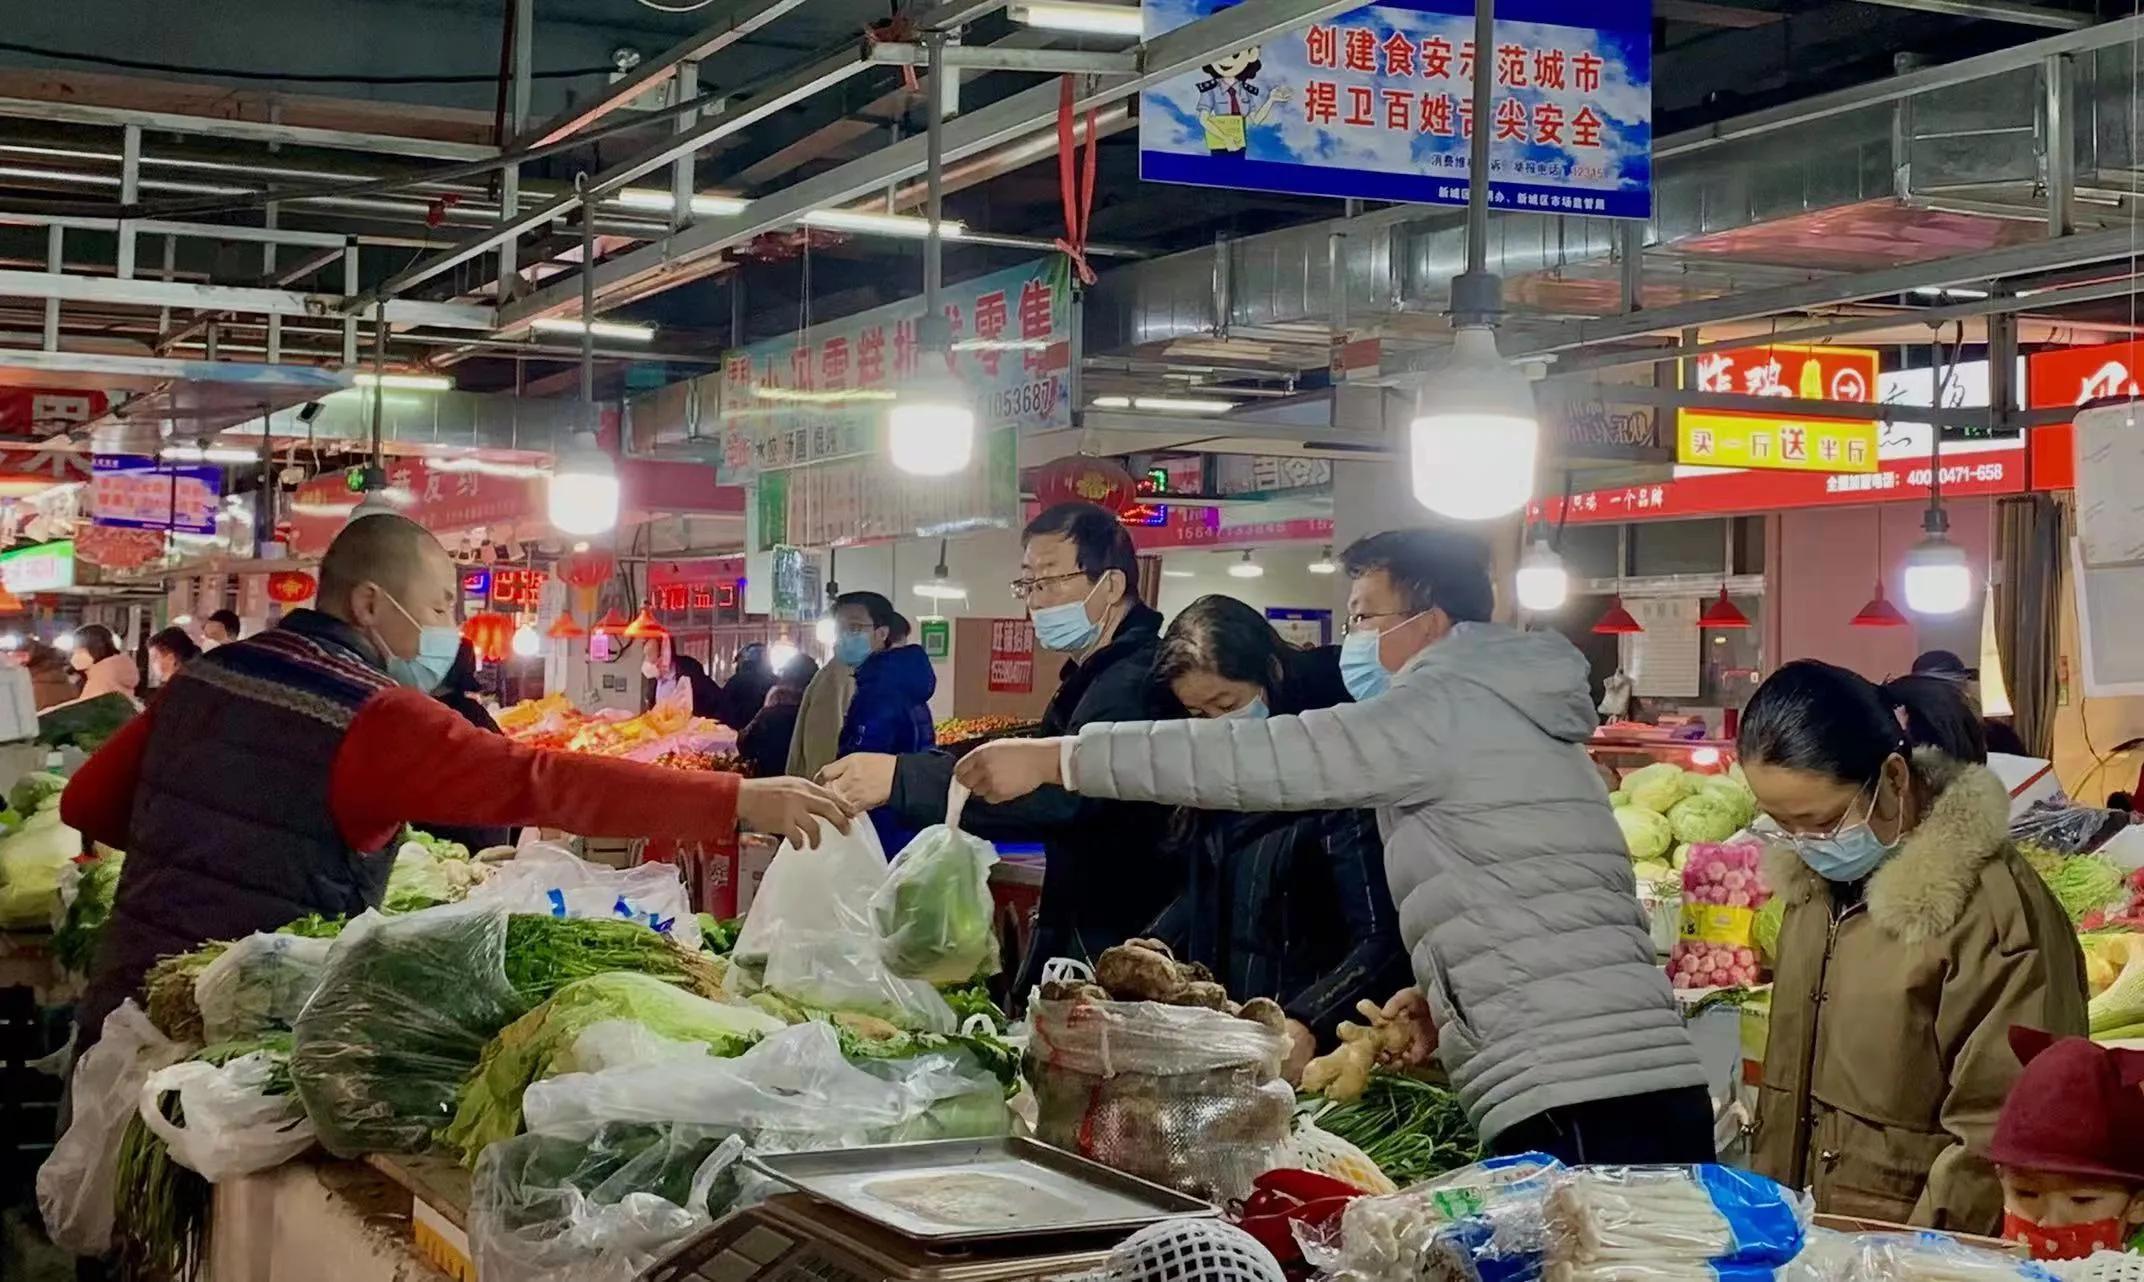 美团平台呼和浩特市两家线上蔬菜店涉嫌哄抬价格被市场监管部门立案调查